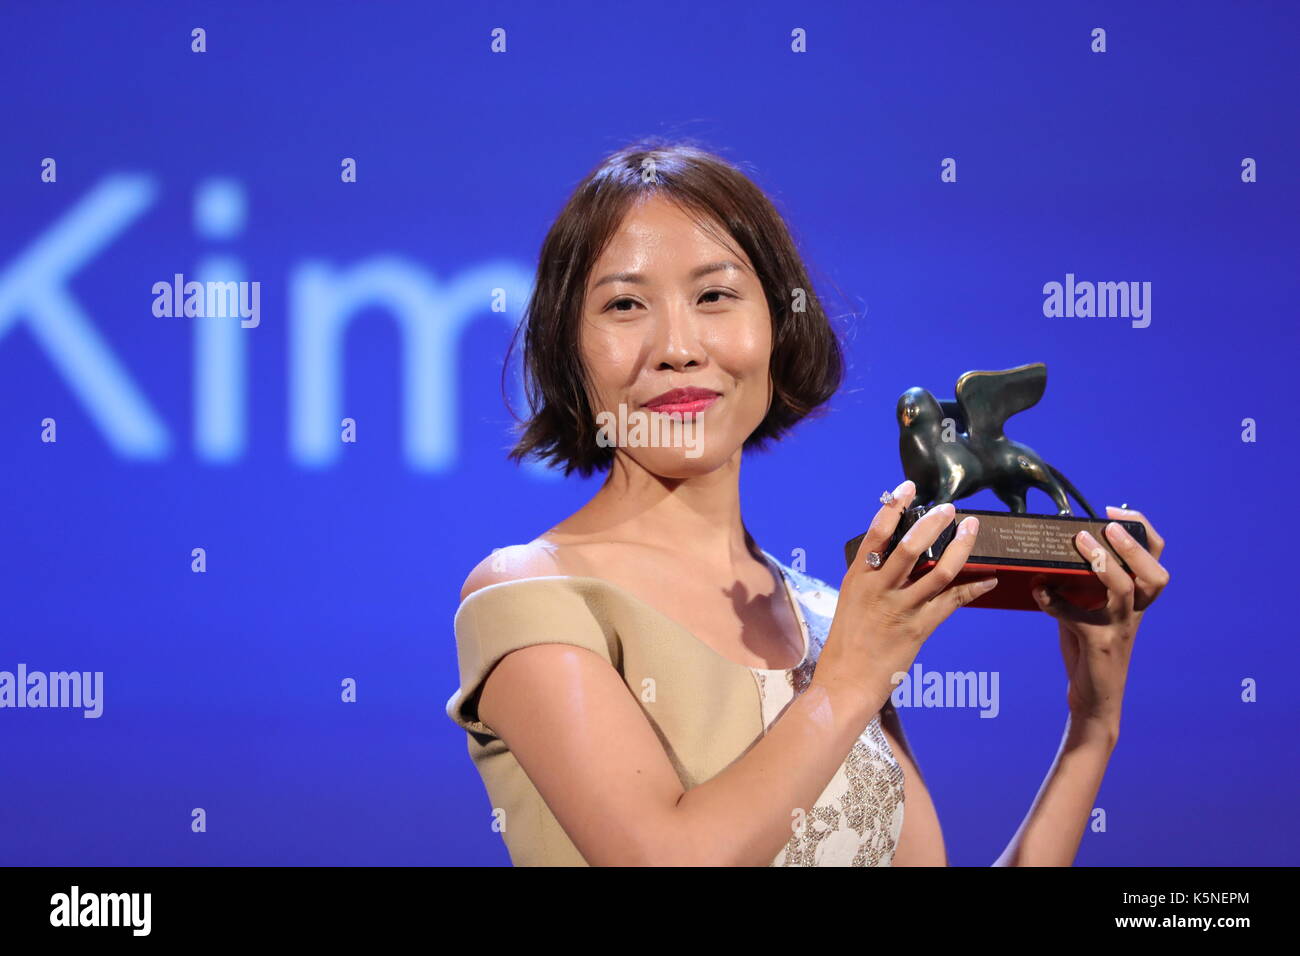 VENEZIA, ITALIA - SETTEMBRE 09: Gina Kim riceve da John Landis il premio Best VR (realtà virtuale) per il film 'senza sangue' durante la cerimonia di premiazione del 74a Festival del Cinema di Venezia il 9 settembre 2017 al Lido di Venezia. Foto Stock